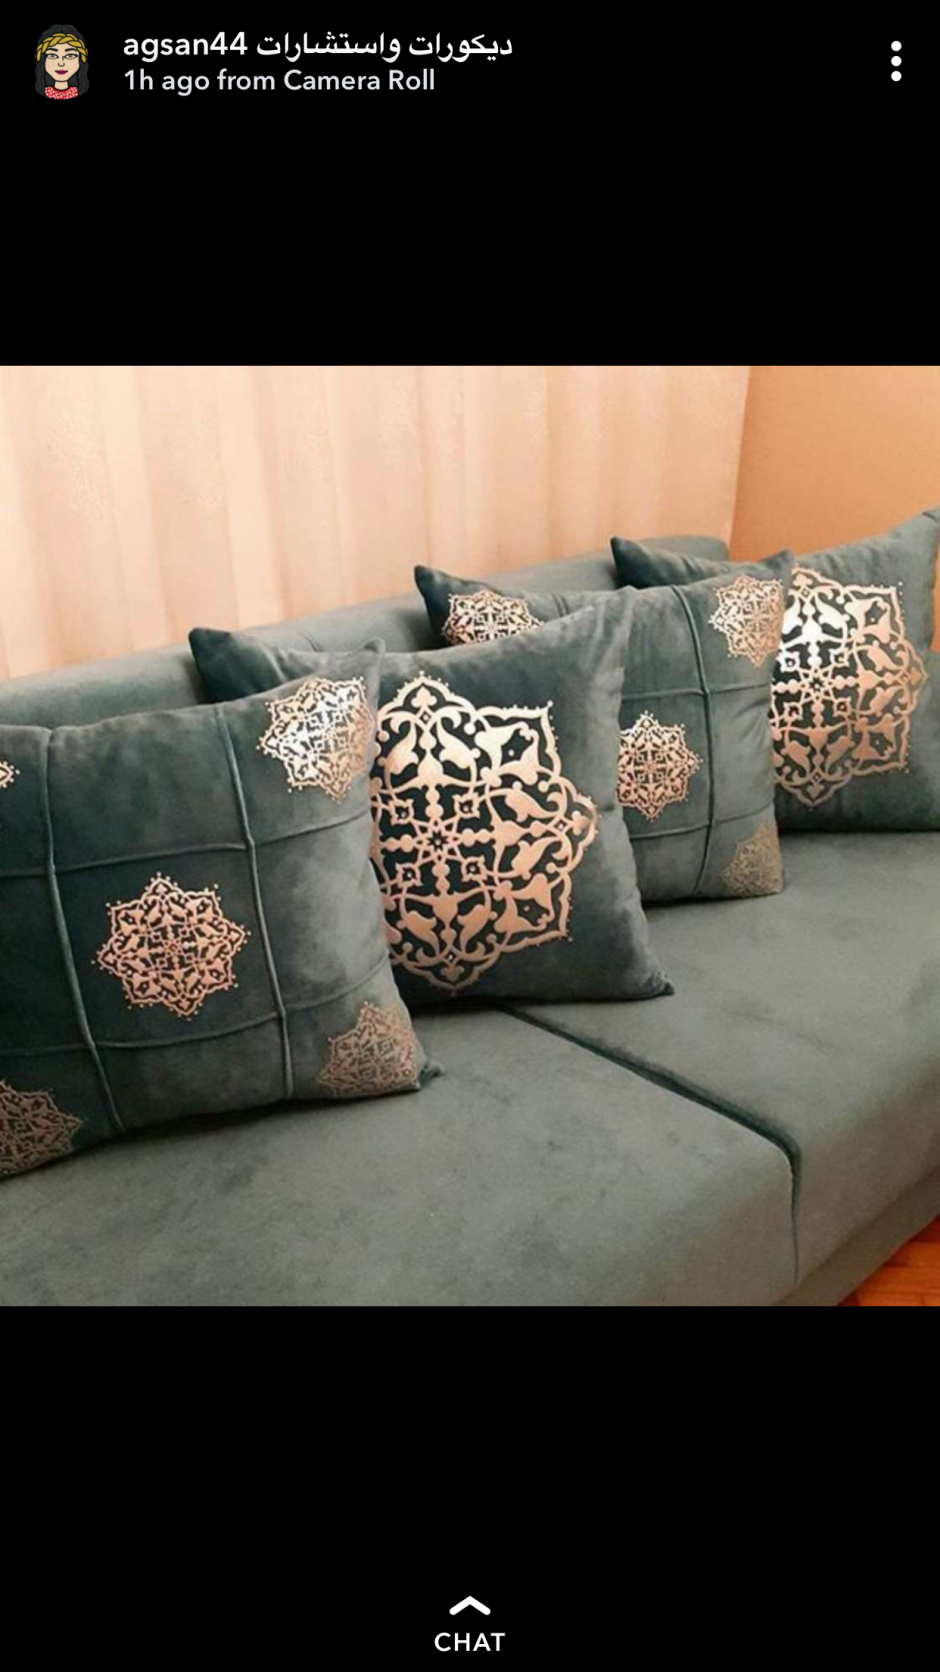 Подушки декоративные на диван